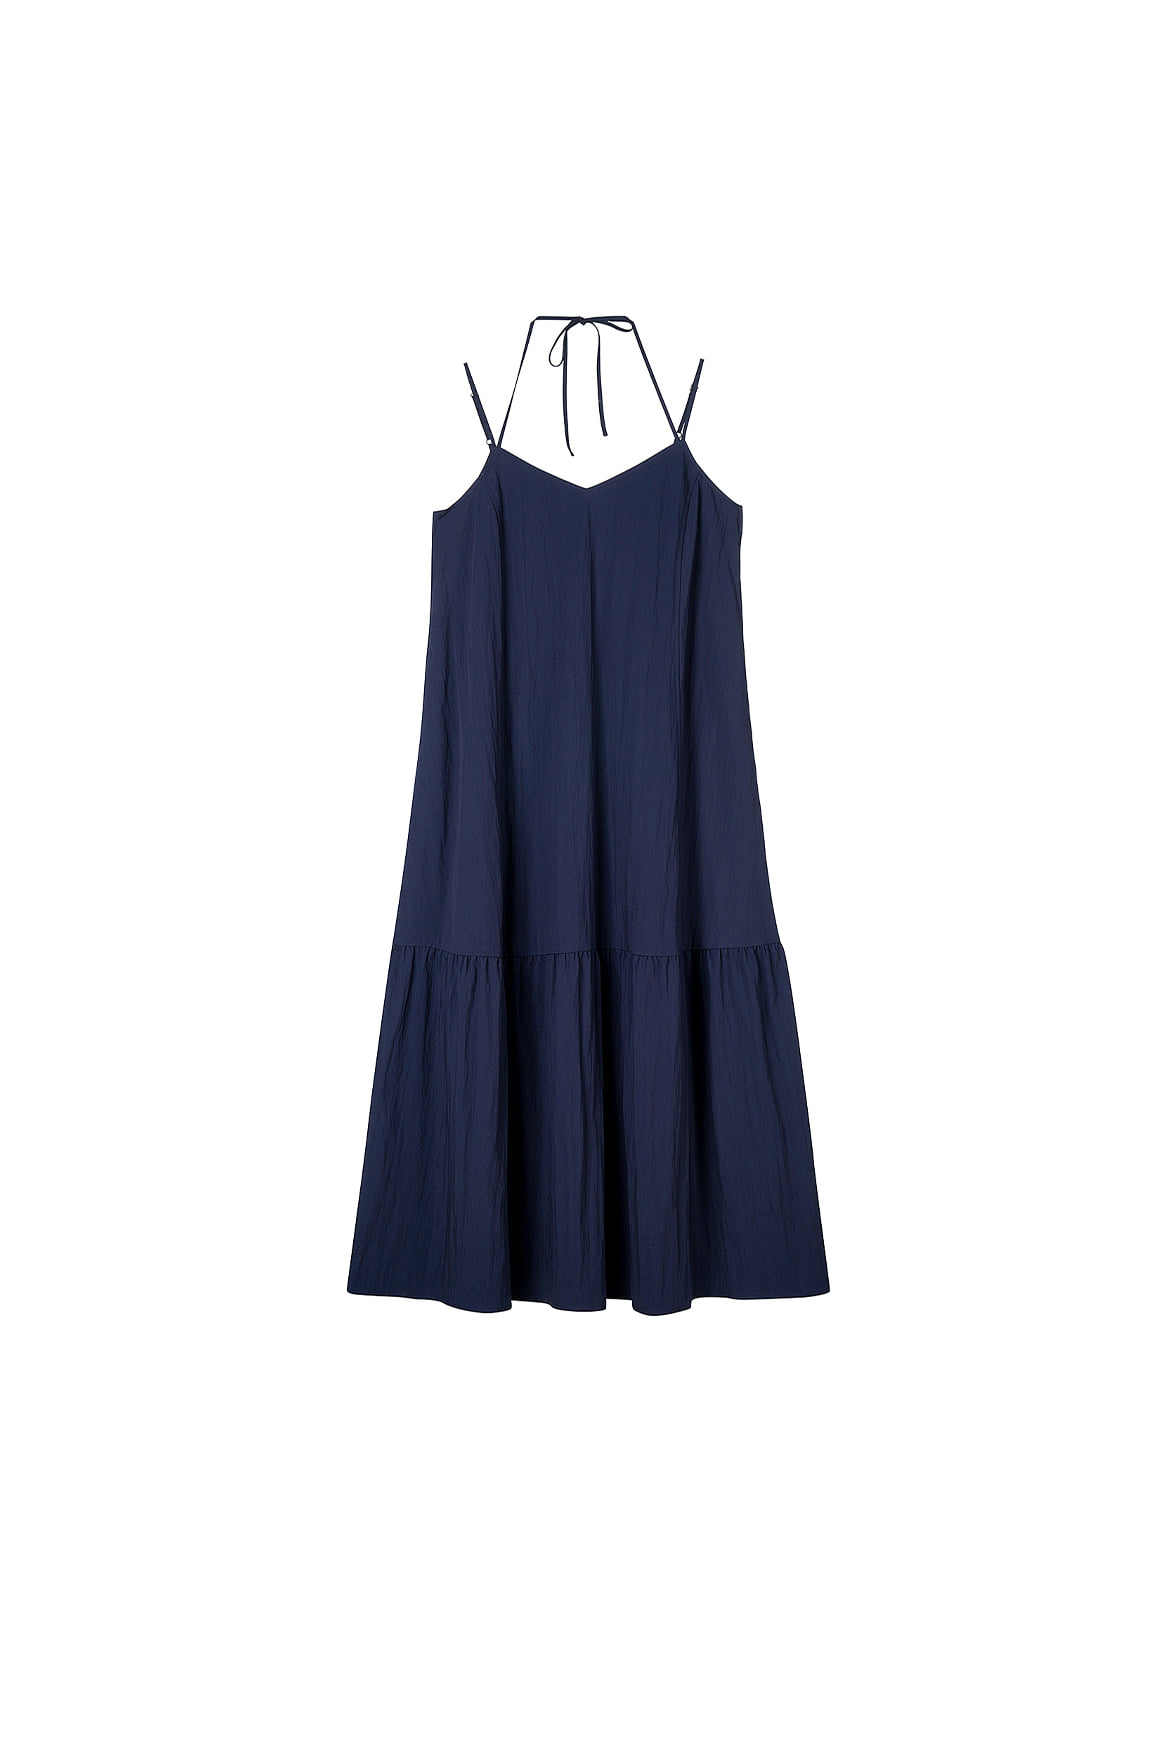 [리퍼브] Double String Summer Dress_Navy